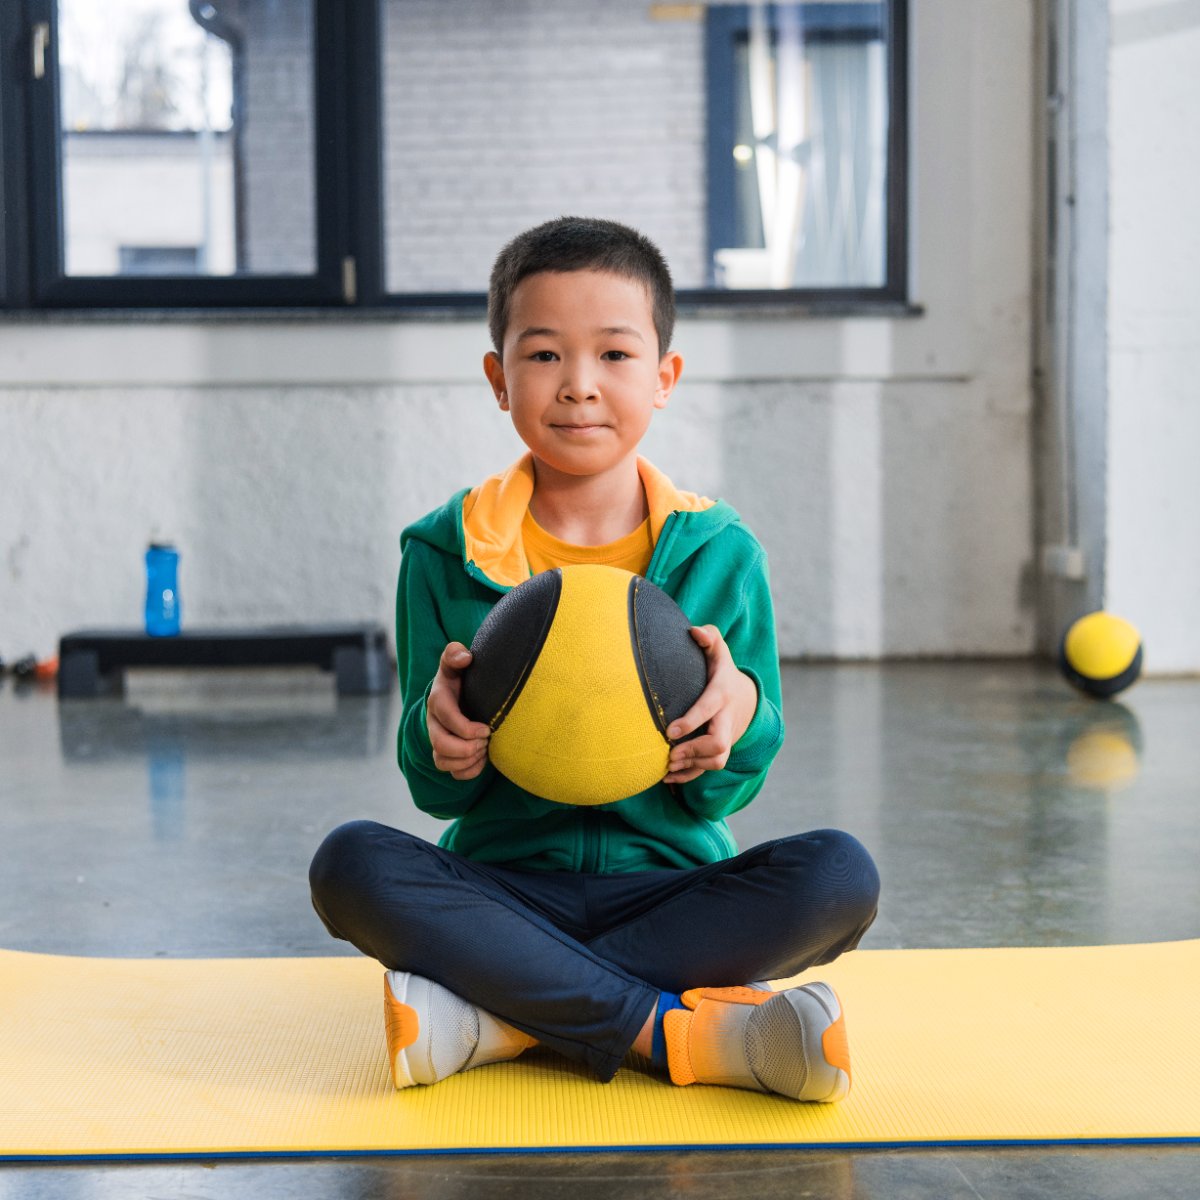 Asian boy holding a ball on an exercise mat.